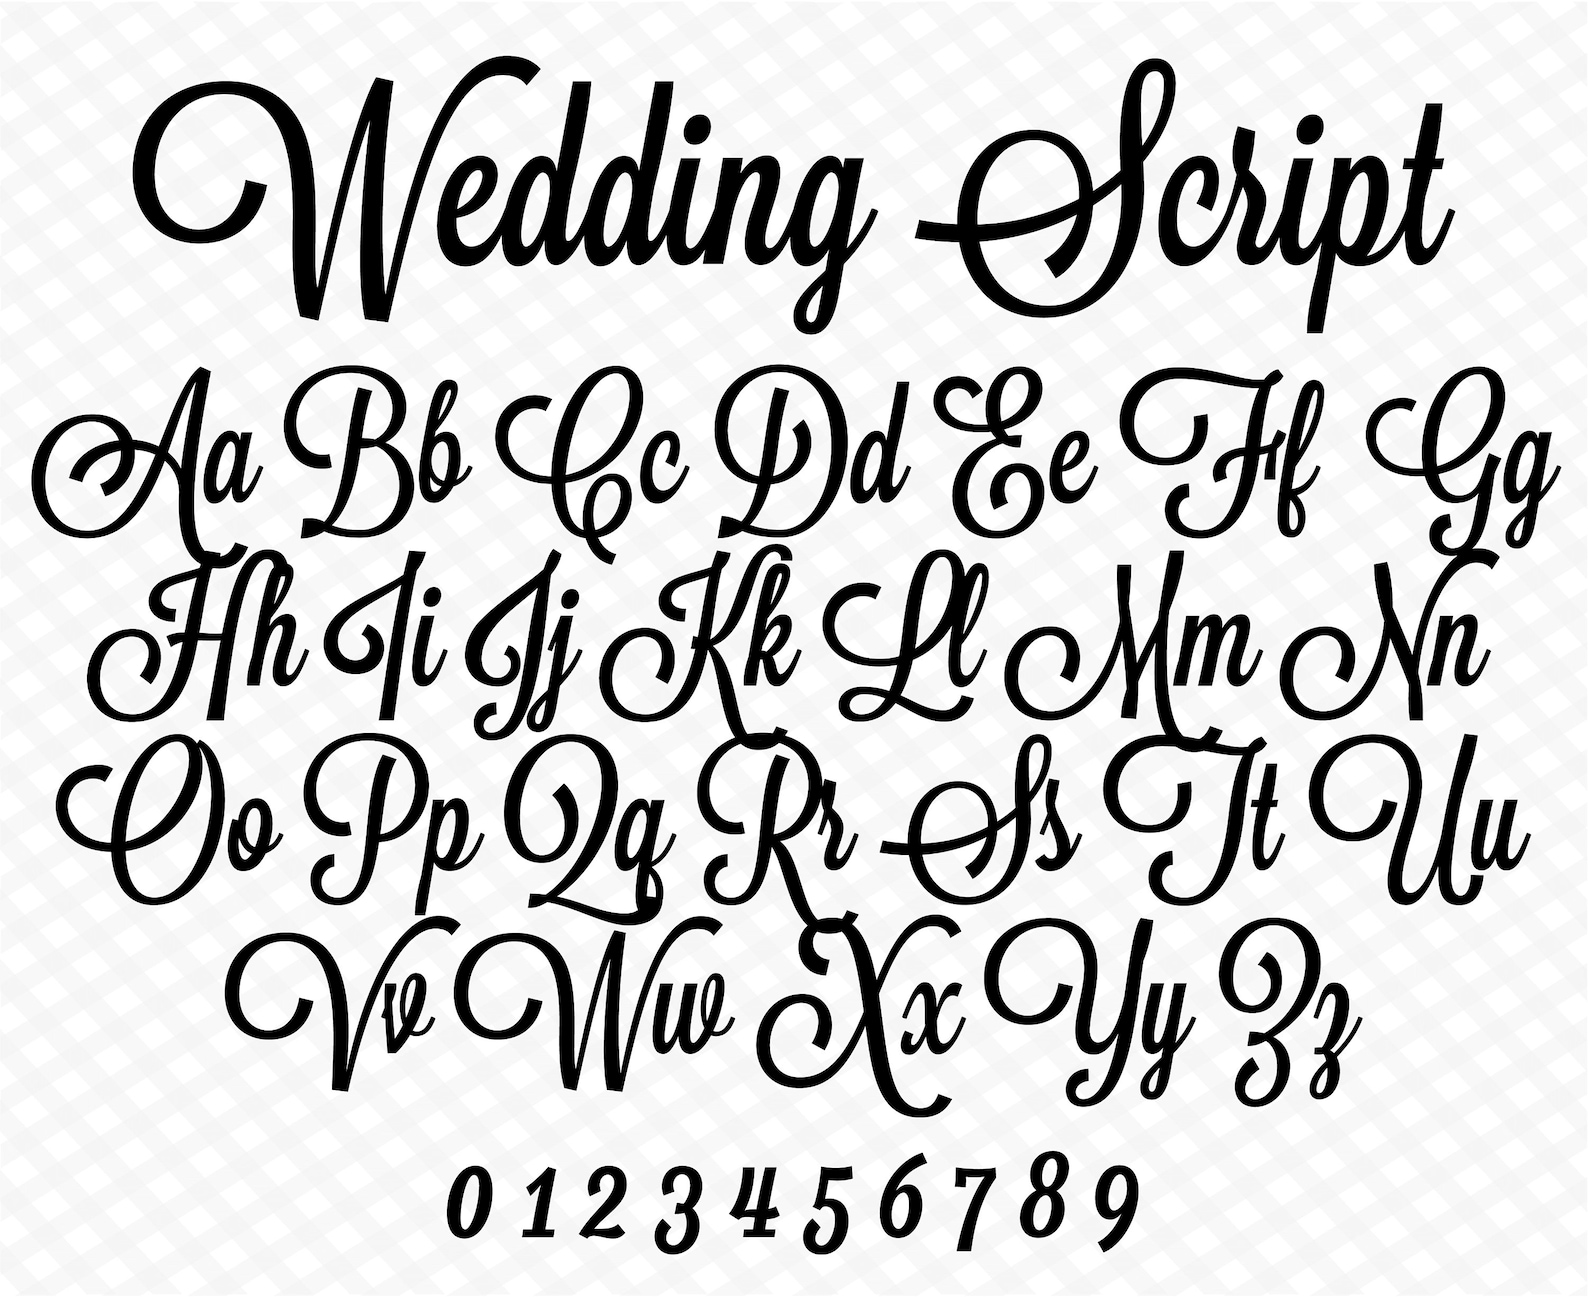 Wedding Font Cursive Font Wedding Script Wedding Cursive Font | Etsy